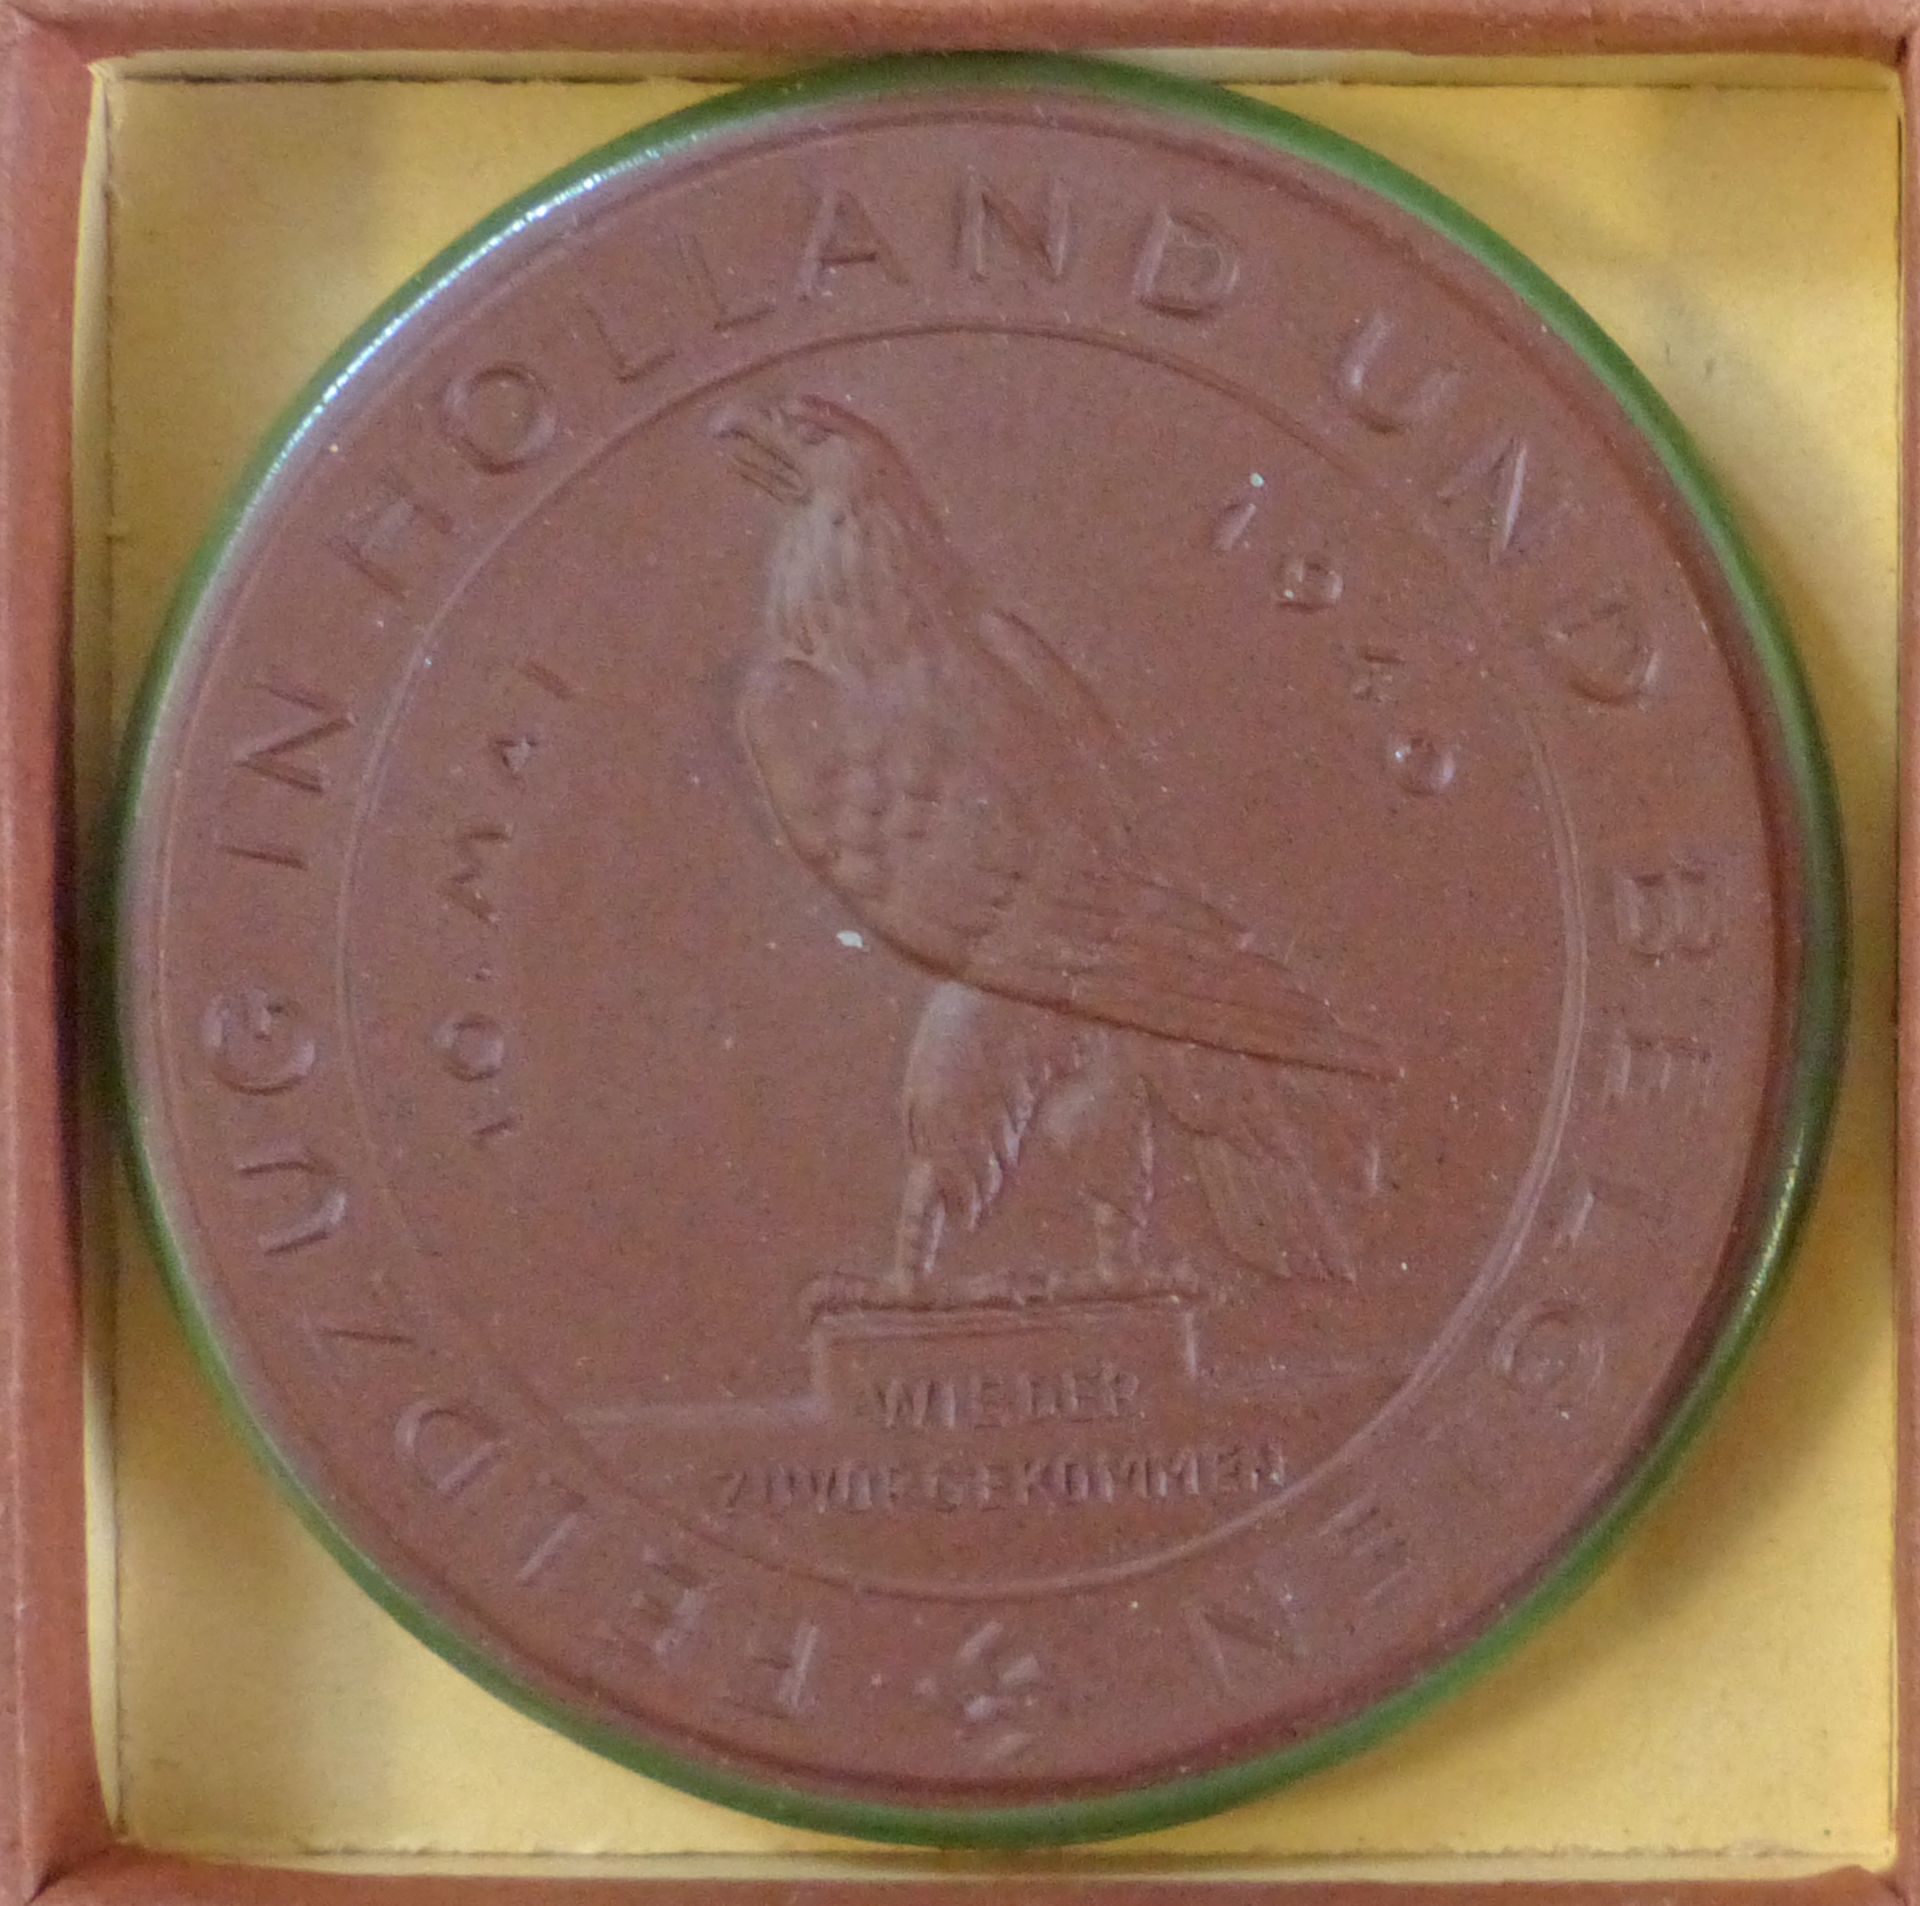 WK II Medaille Meissener Porzellan Feldzug in Holland und Belgien 1940 50mm braun mit grünen Rand im